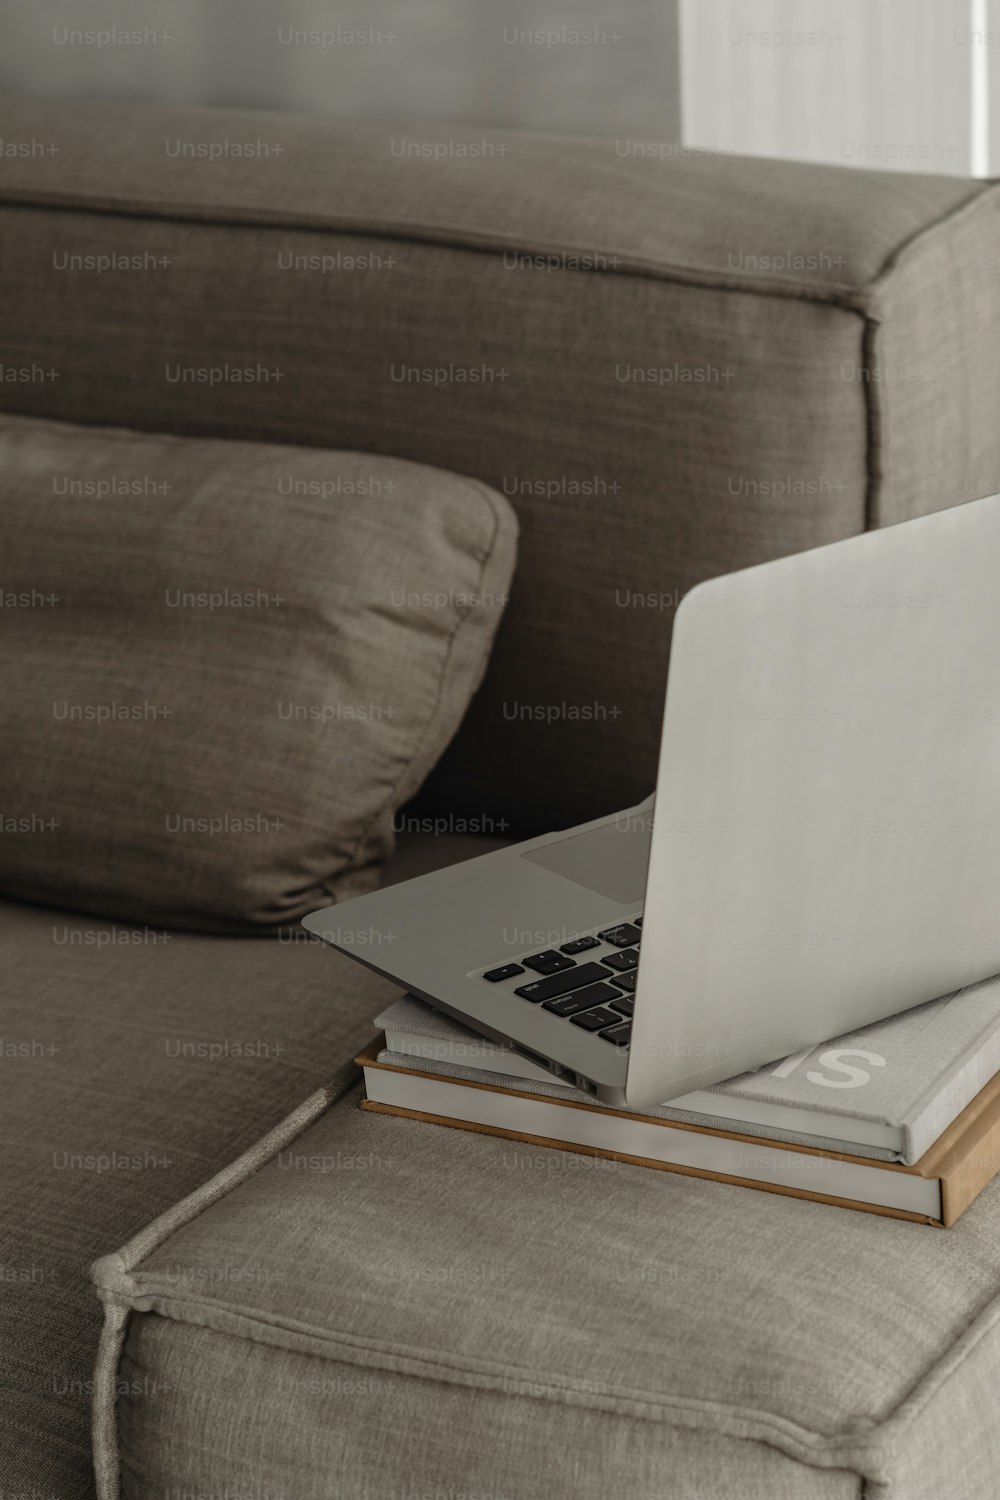 Ein Laptop sitzt auf einem Buch auf einer Couch